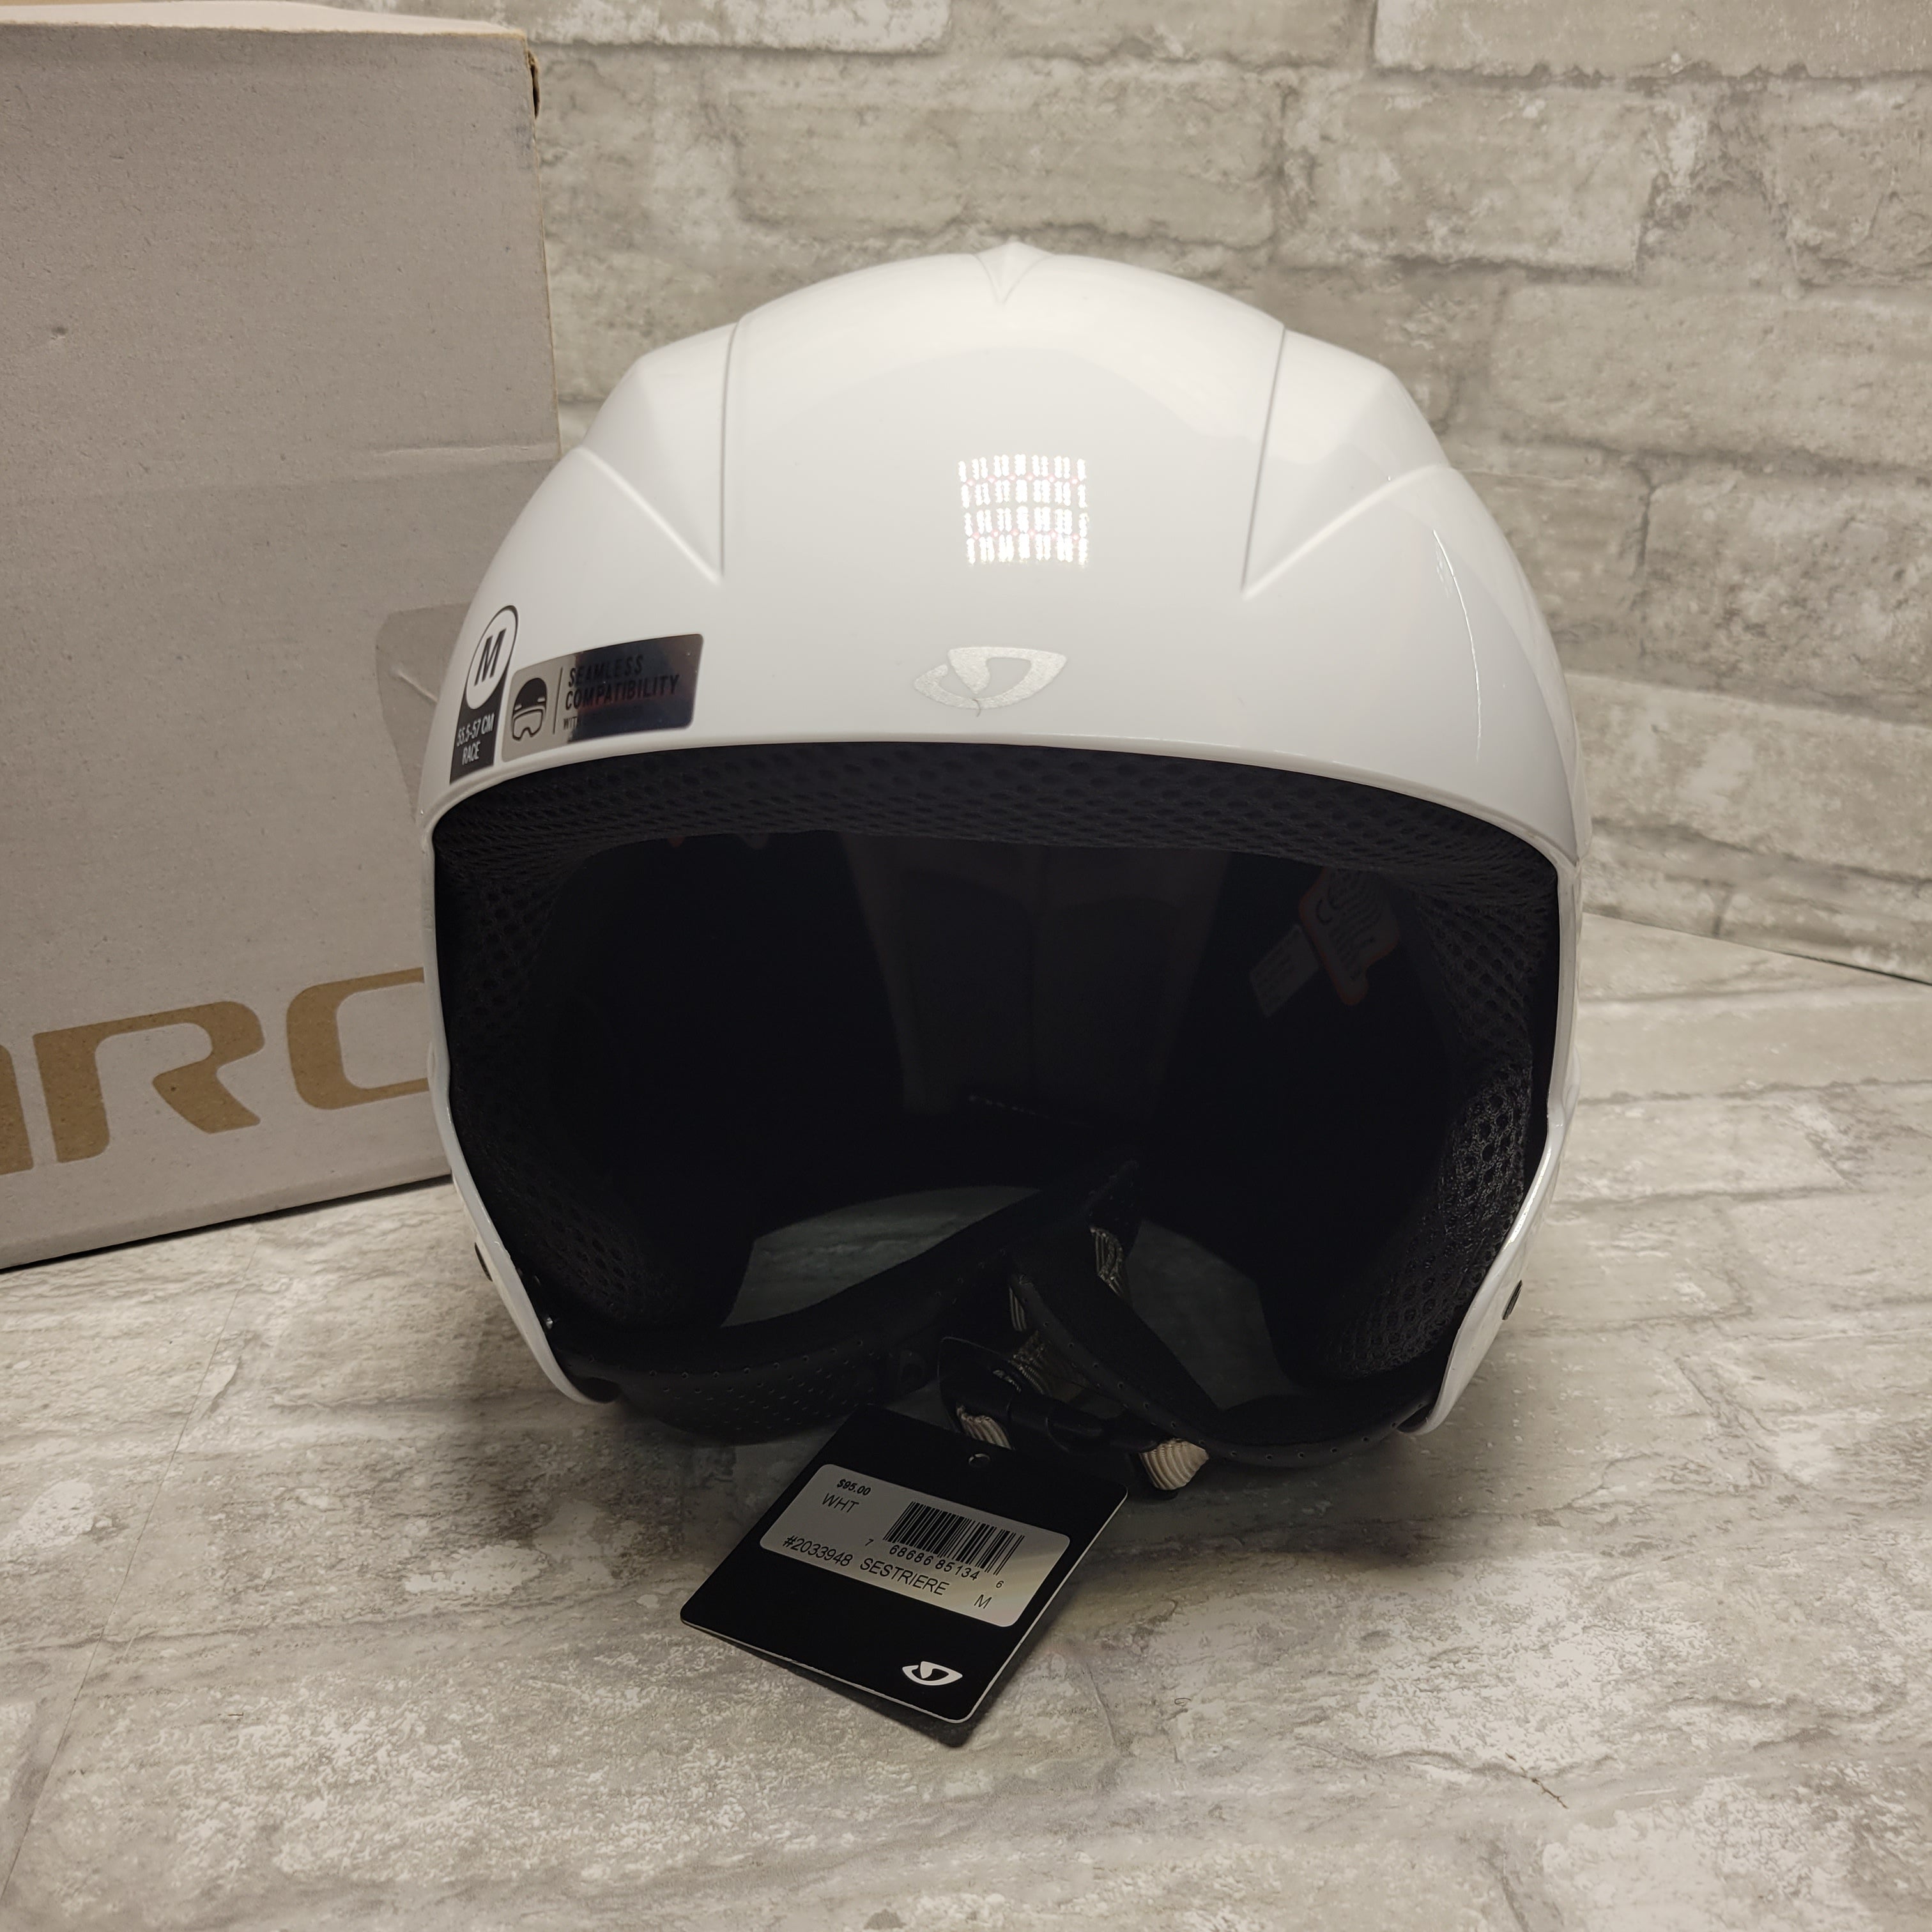 Giro Sestriere Race Snow Helmet #2033948, Adult White Medium (8075261837550)